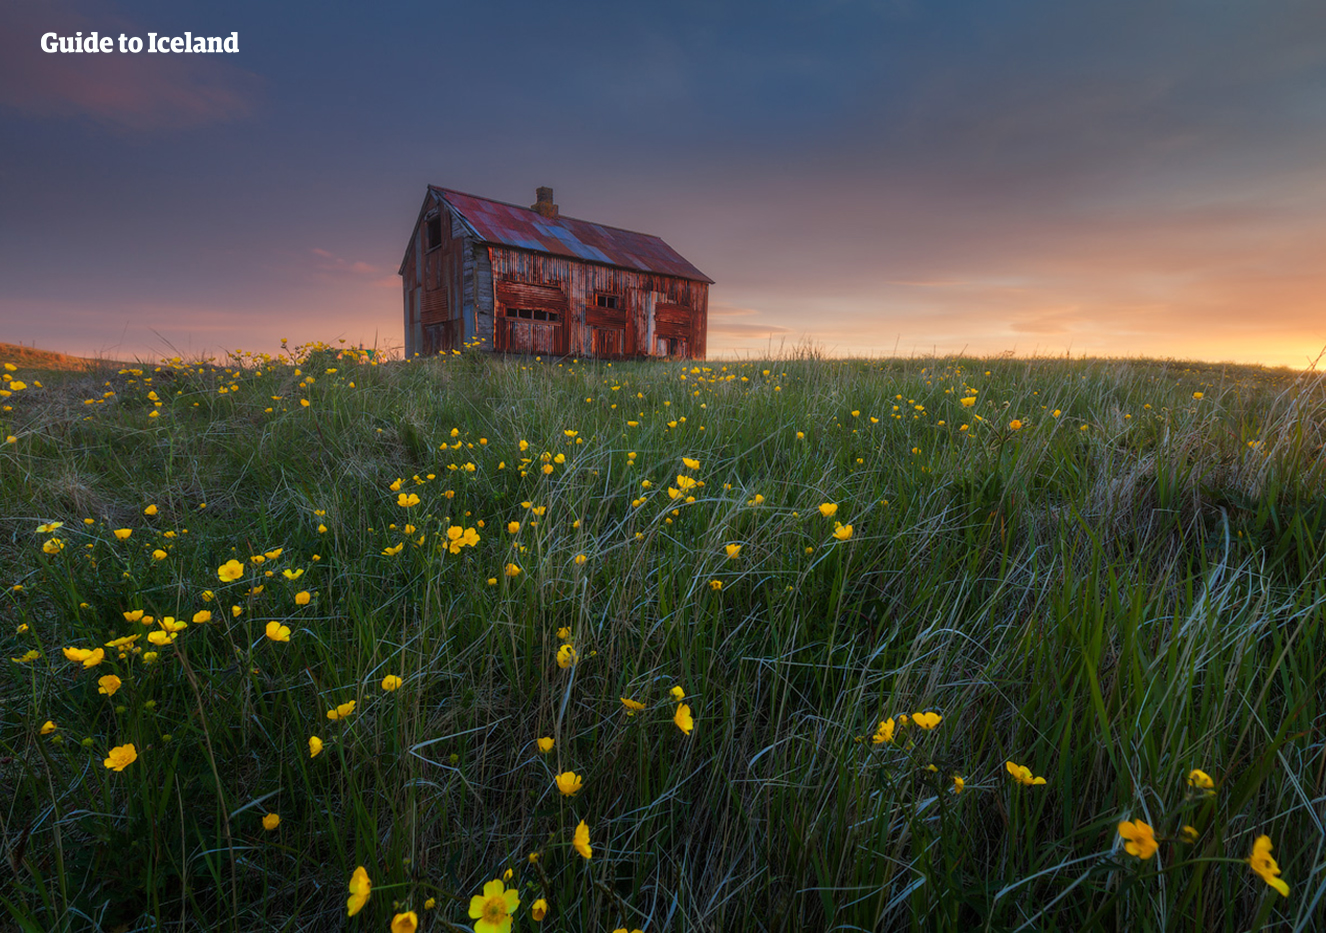 雷克雅内斯半岛是最容易被忽略的冰岛小众景区。